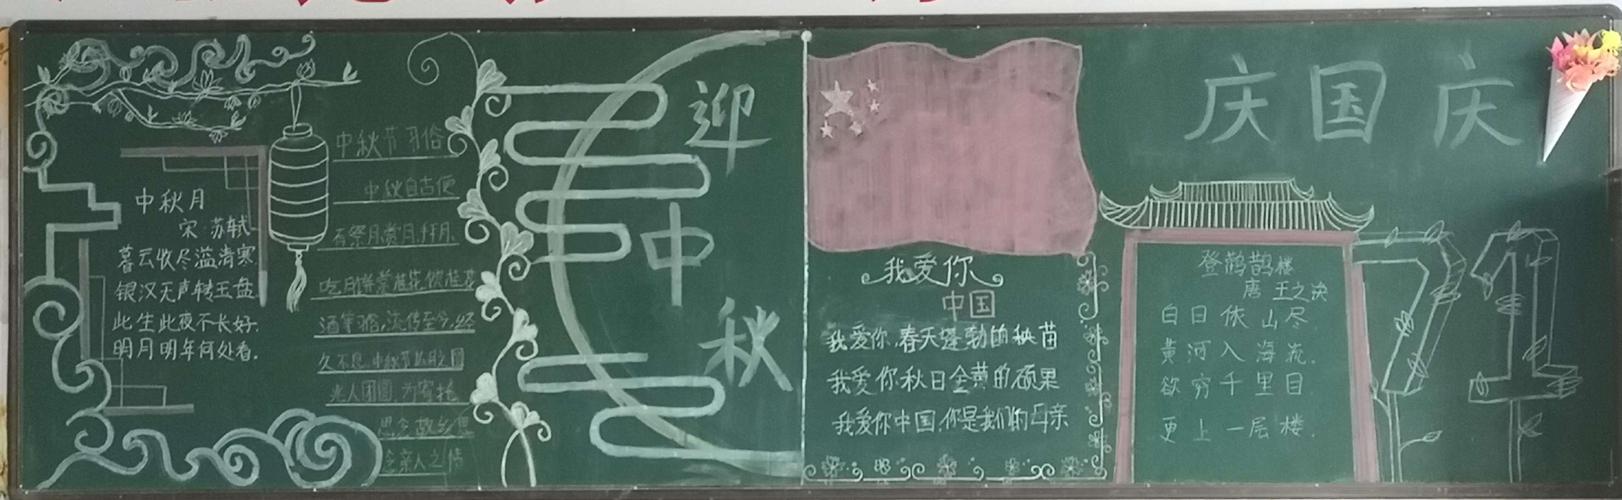 中秋庆国庆主题黑板报比赛副本 写美篇为让学生了解祖国的巨大